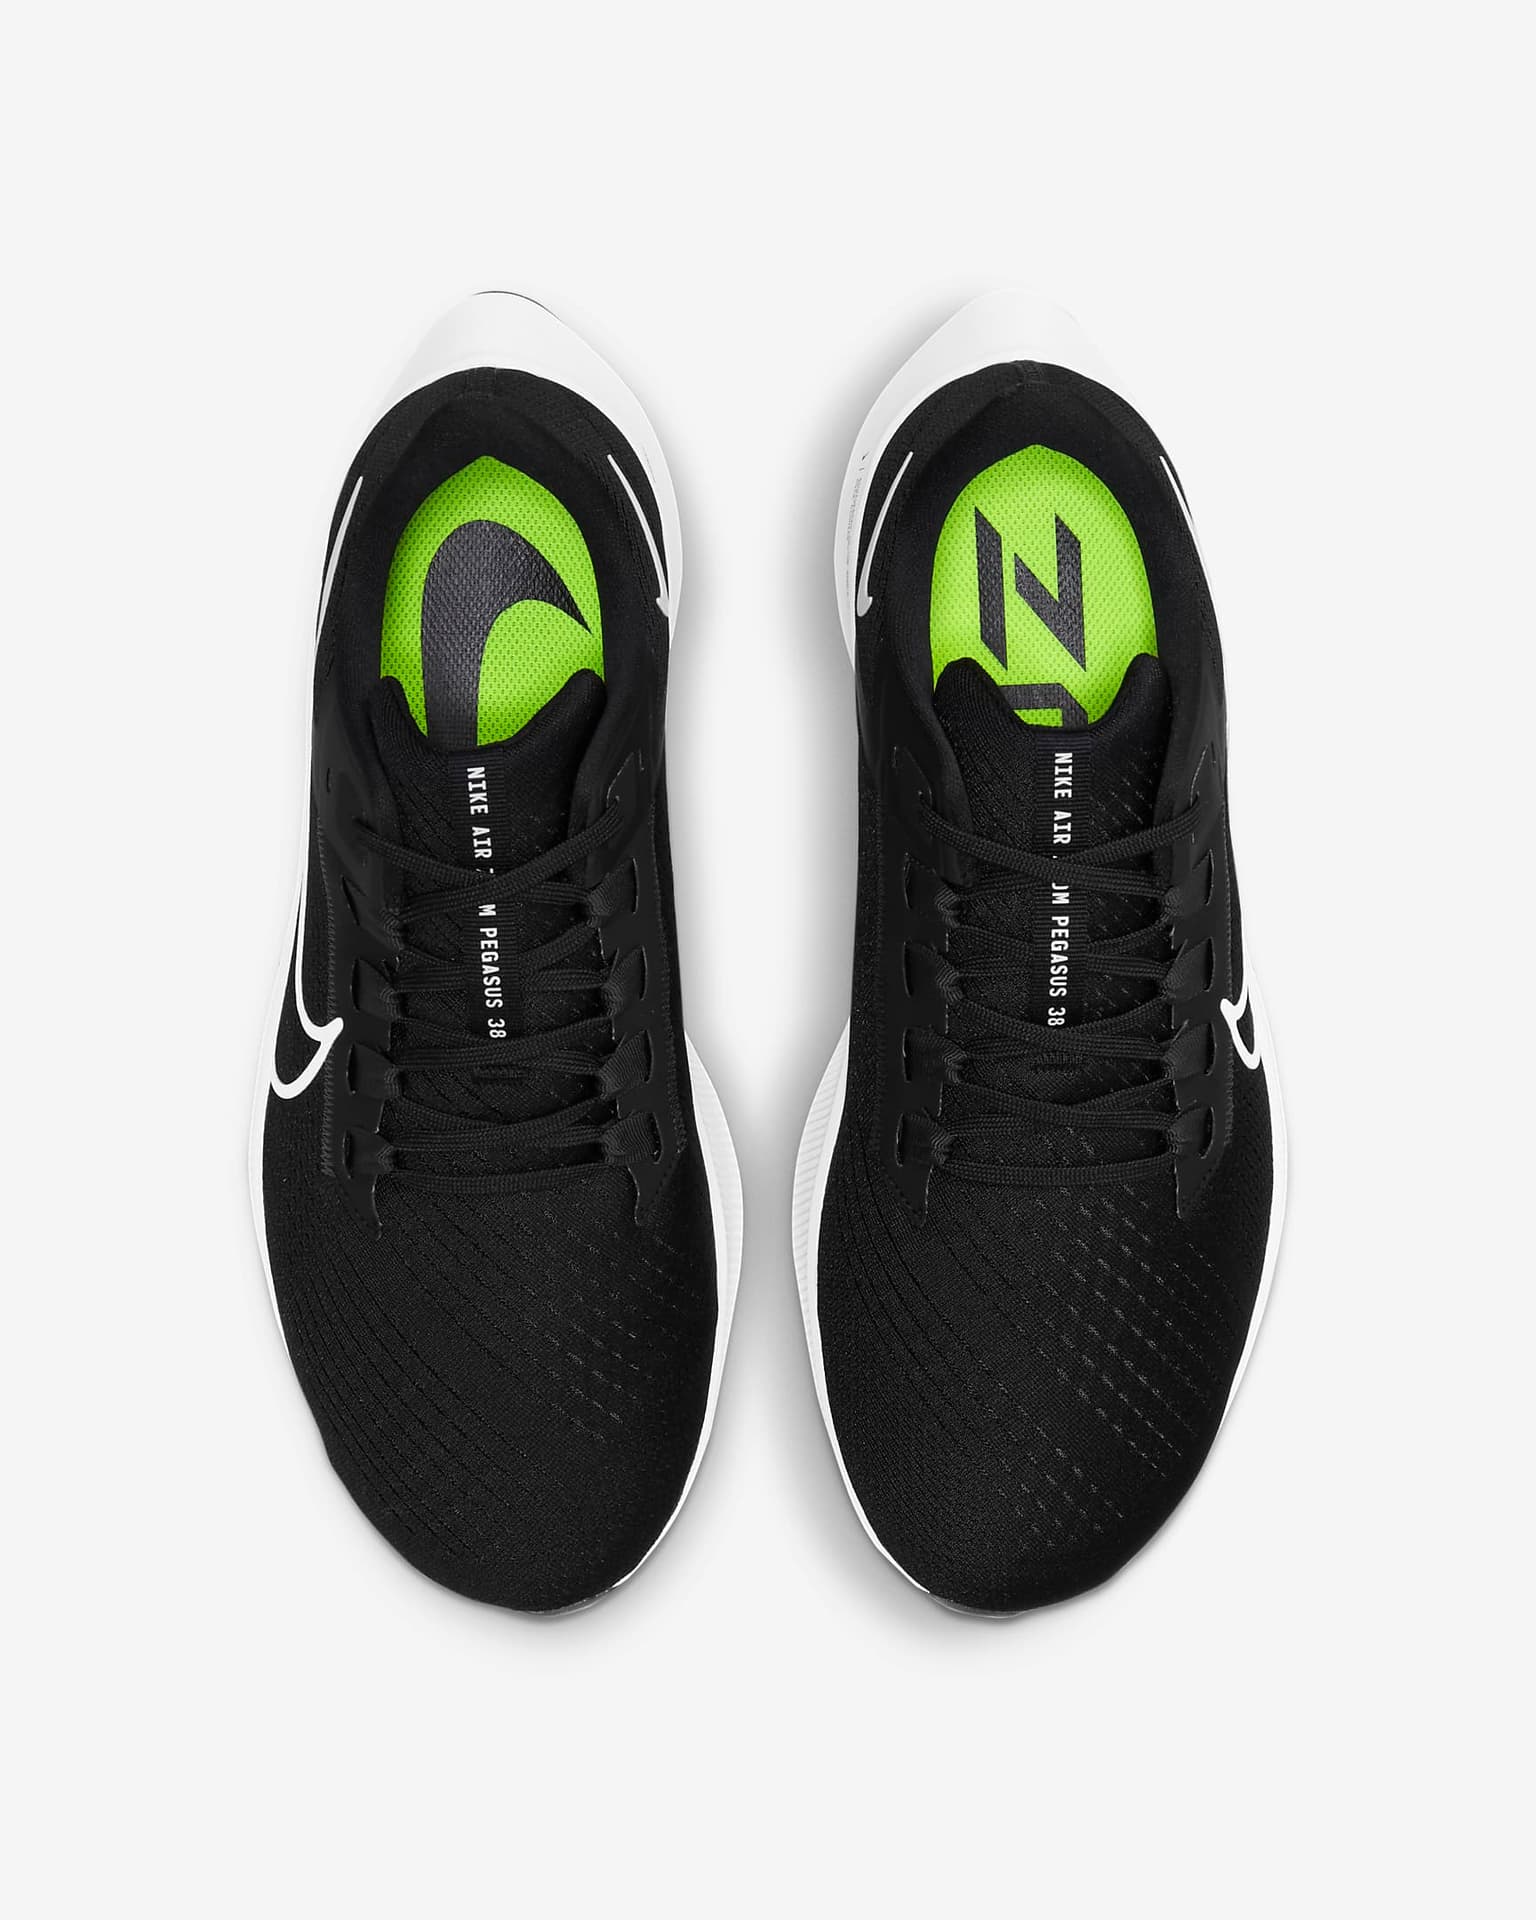 energie Doordringen paraplu Hoe je de beste schoenen voor brede voeten vindt. Nike NL